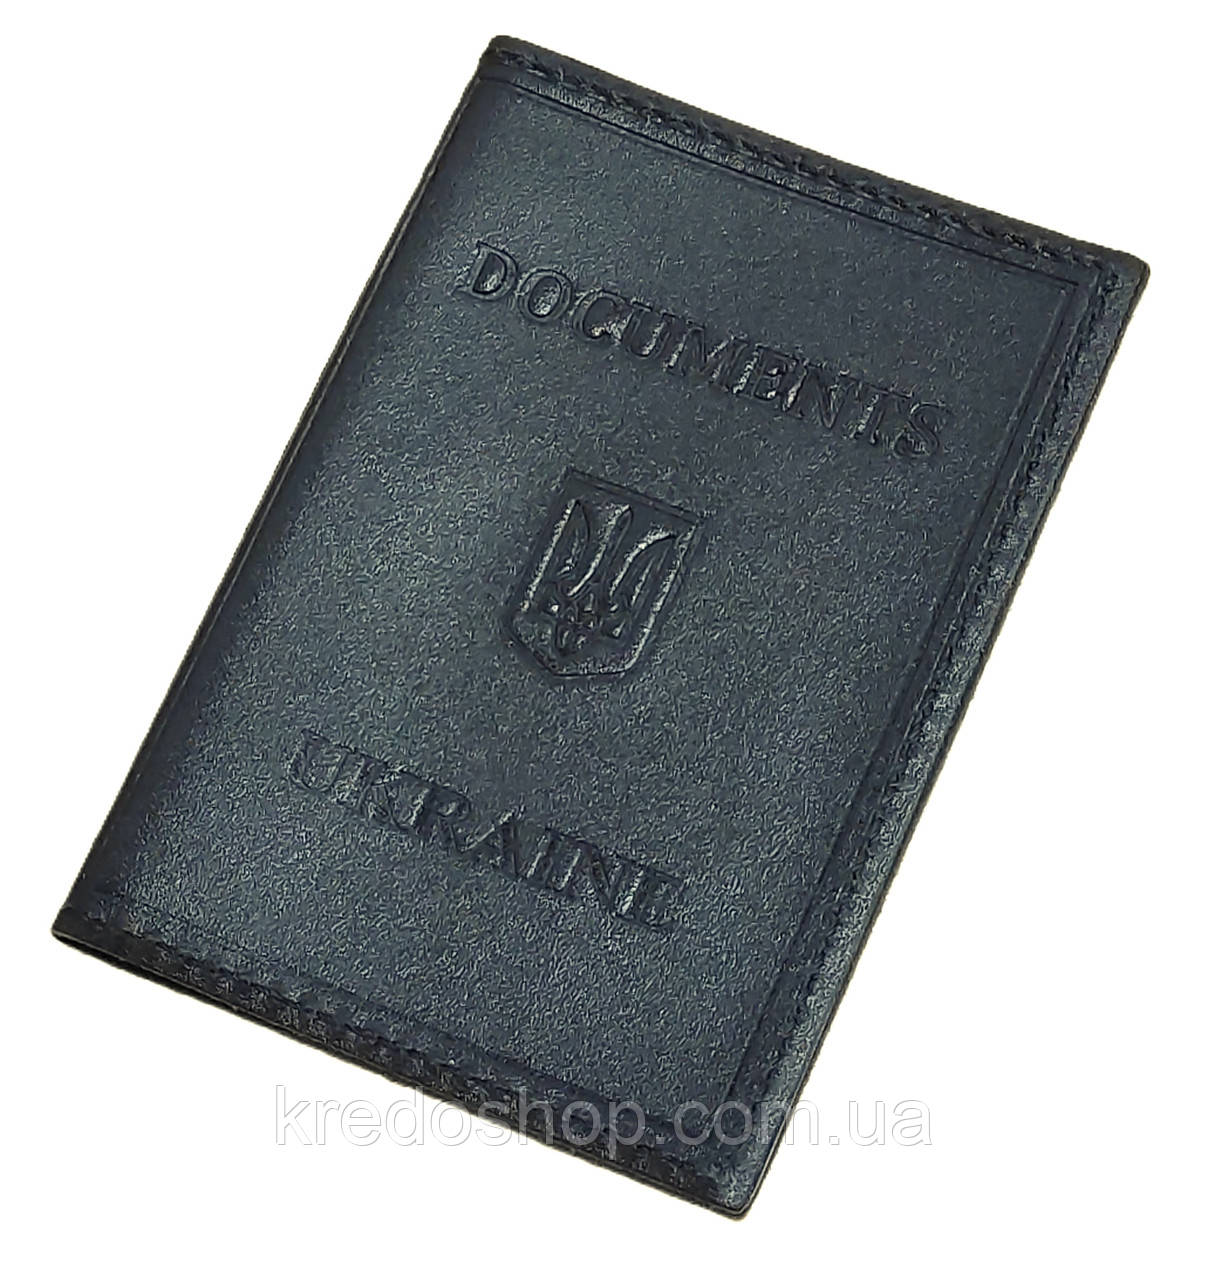 Обкладинка для ID документів паспорта 10*7*1чорна (Україна)